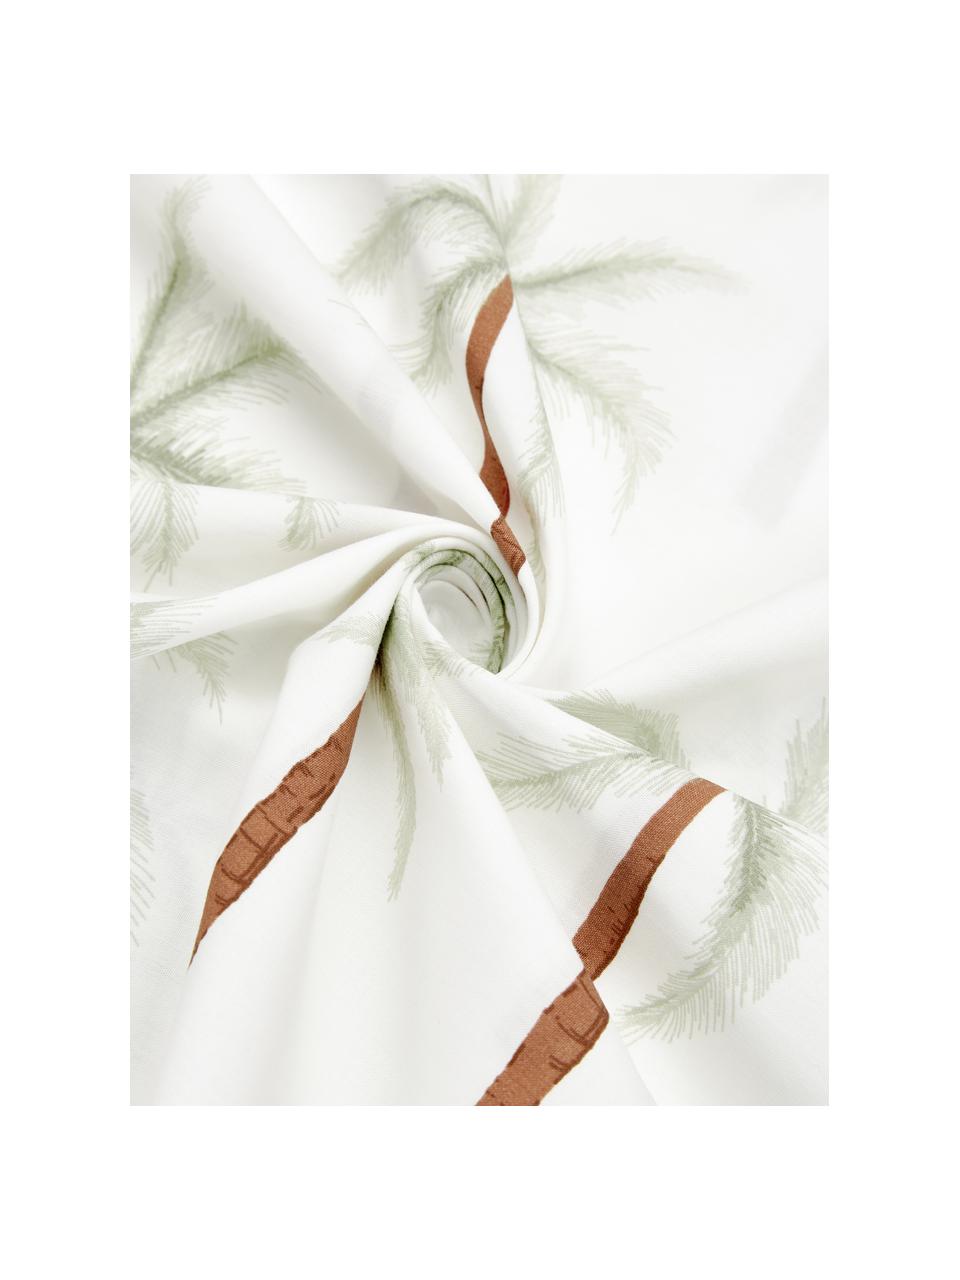 Parure copripiumino in cotone percalle organico con stampa tropicale Martha, Tessuto: percalle Densità di tessi, Bianco, verde, marrone, 200 x 200 cm + 2 federe 80 x 80 cm